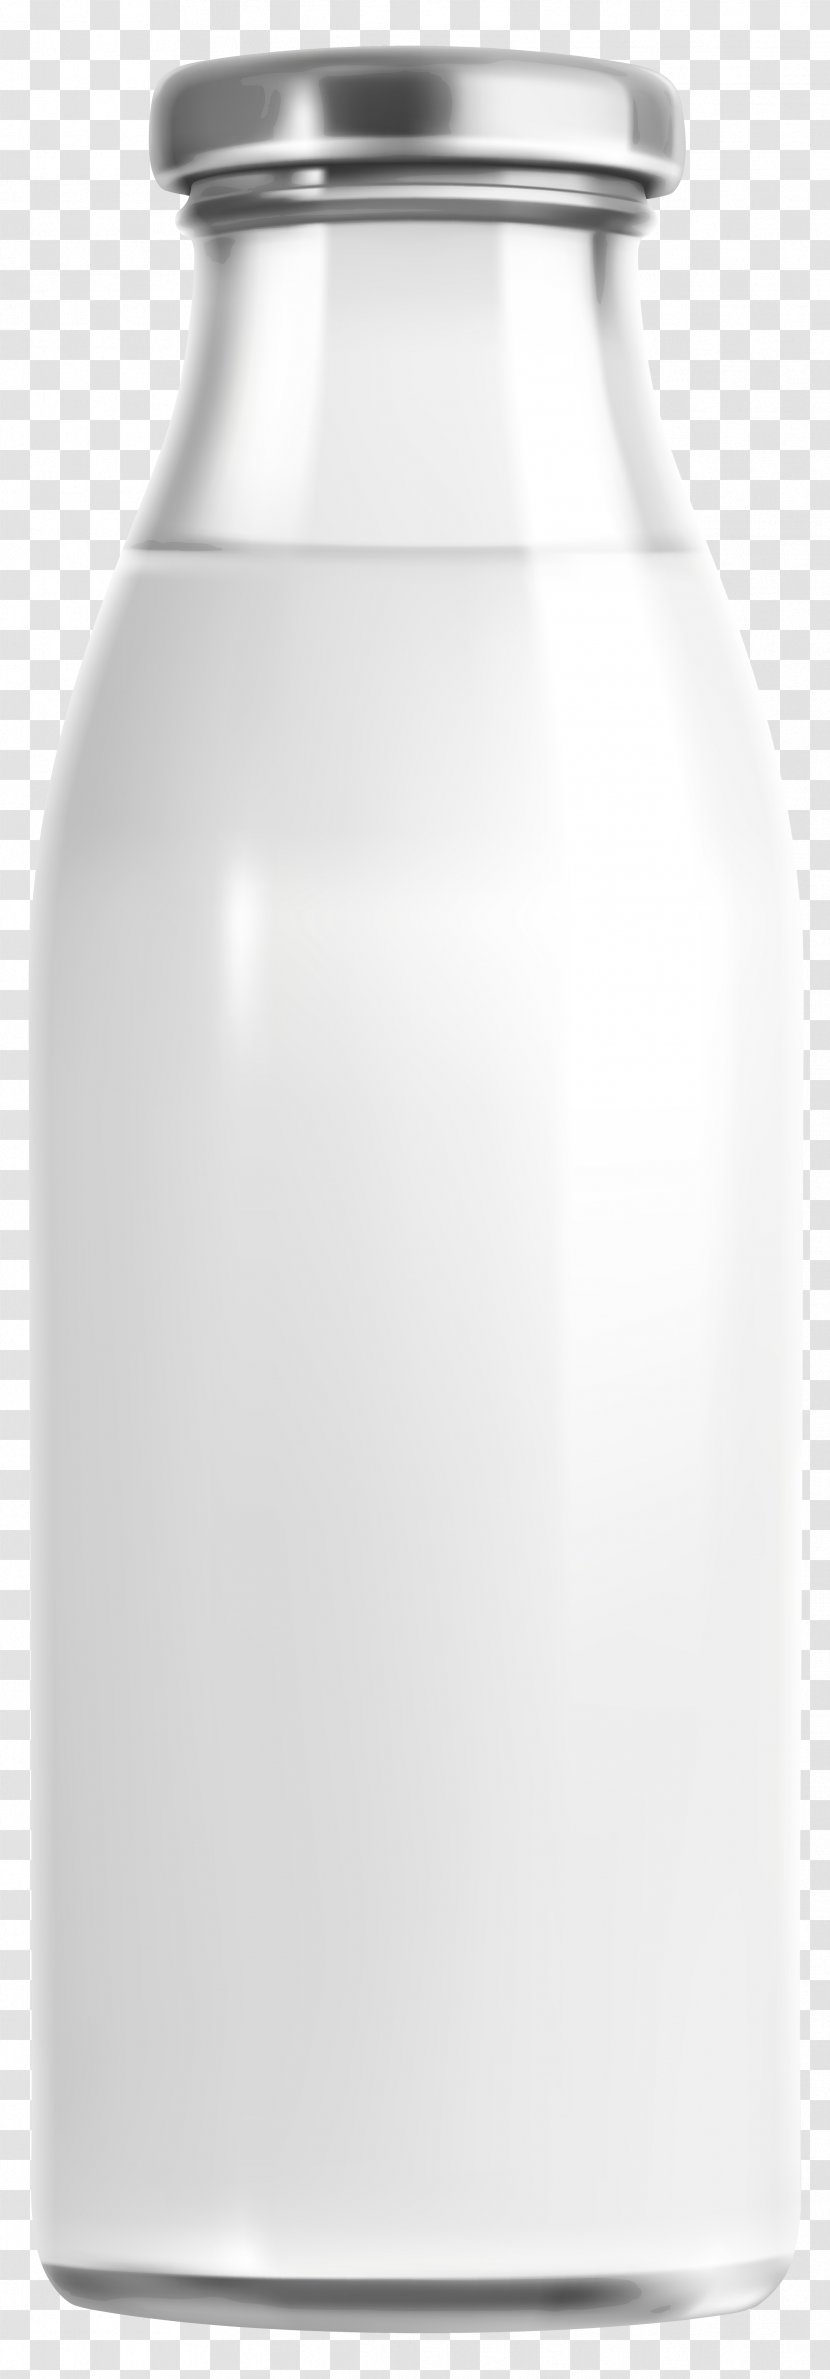 Milk Bottle Clip Art - Raw Transparent PNG